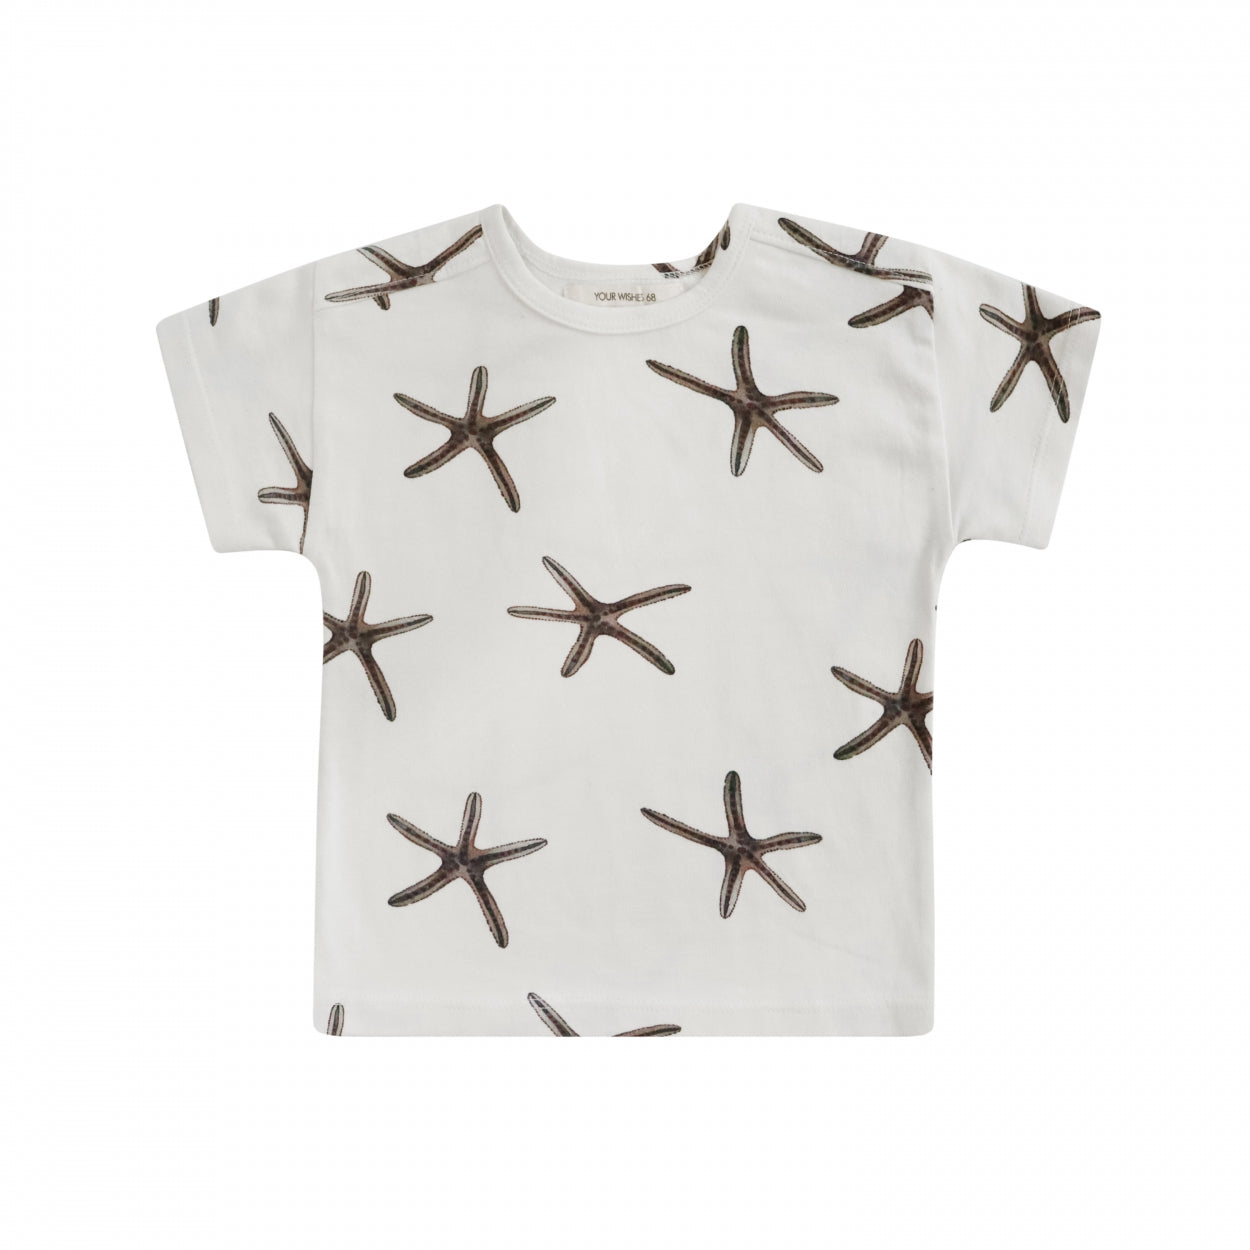 Jongens Shirt Star Fish | Elvar van Your Wishes in de kleur Chalk in maat 68.